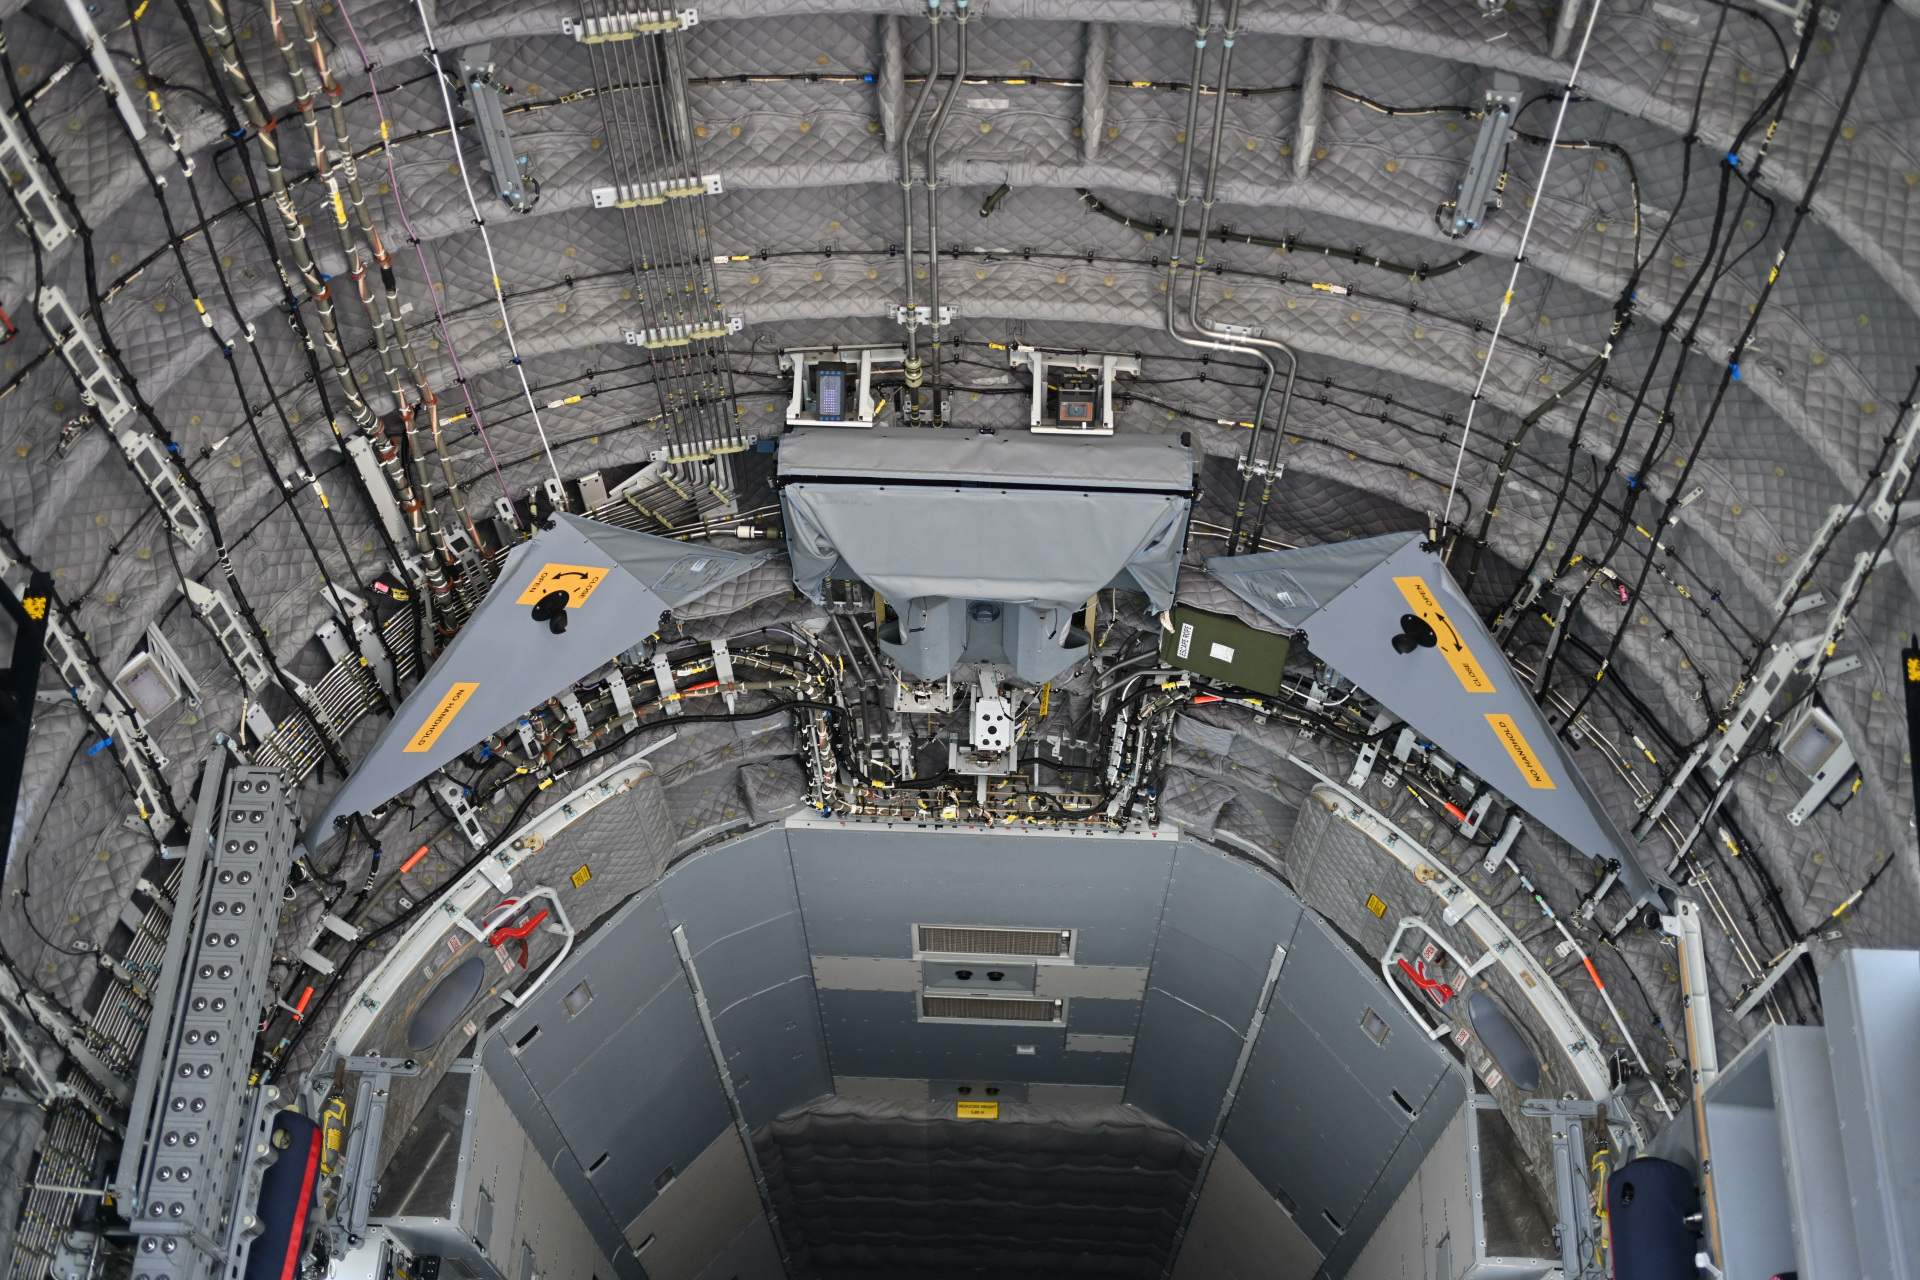 安124运输机内部图片